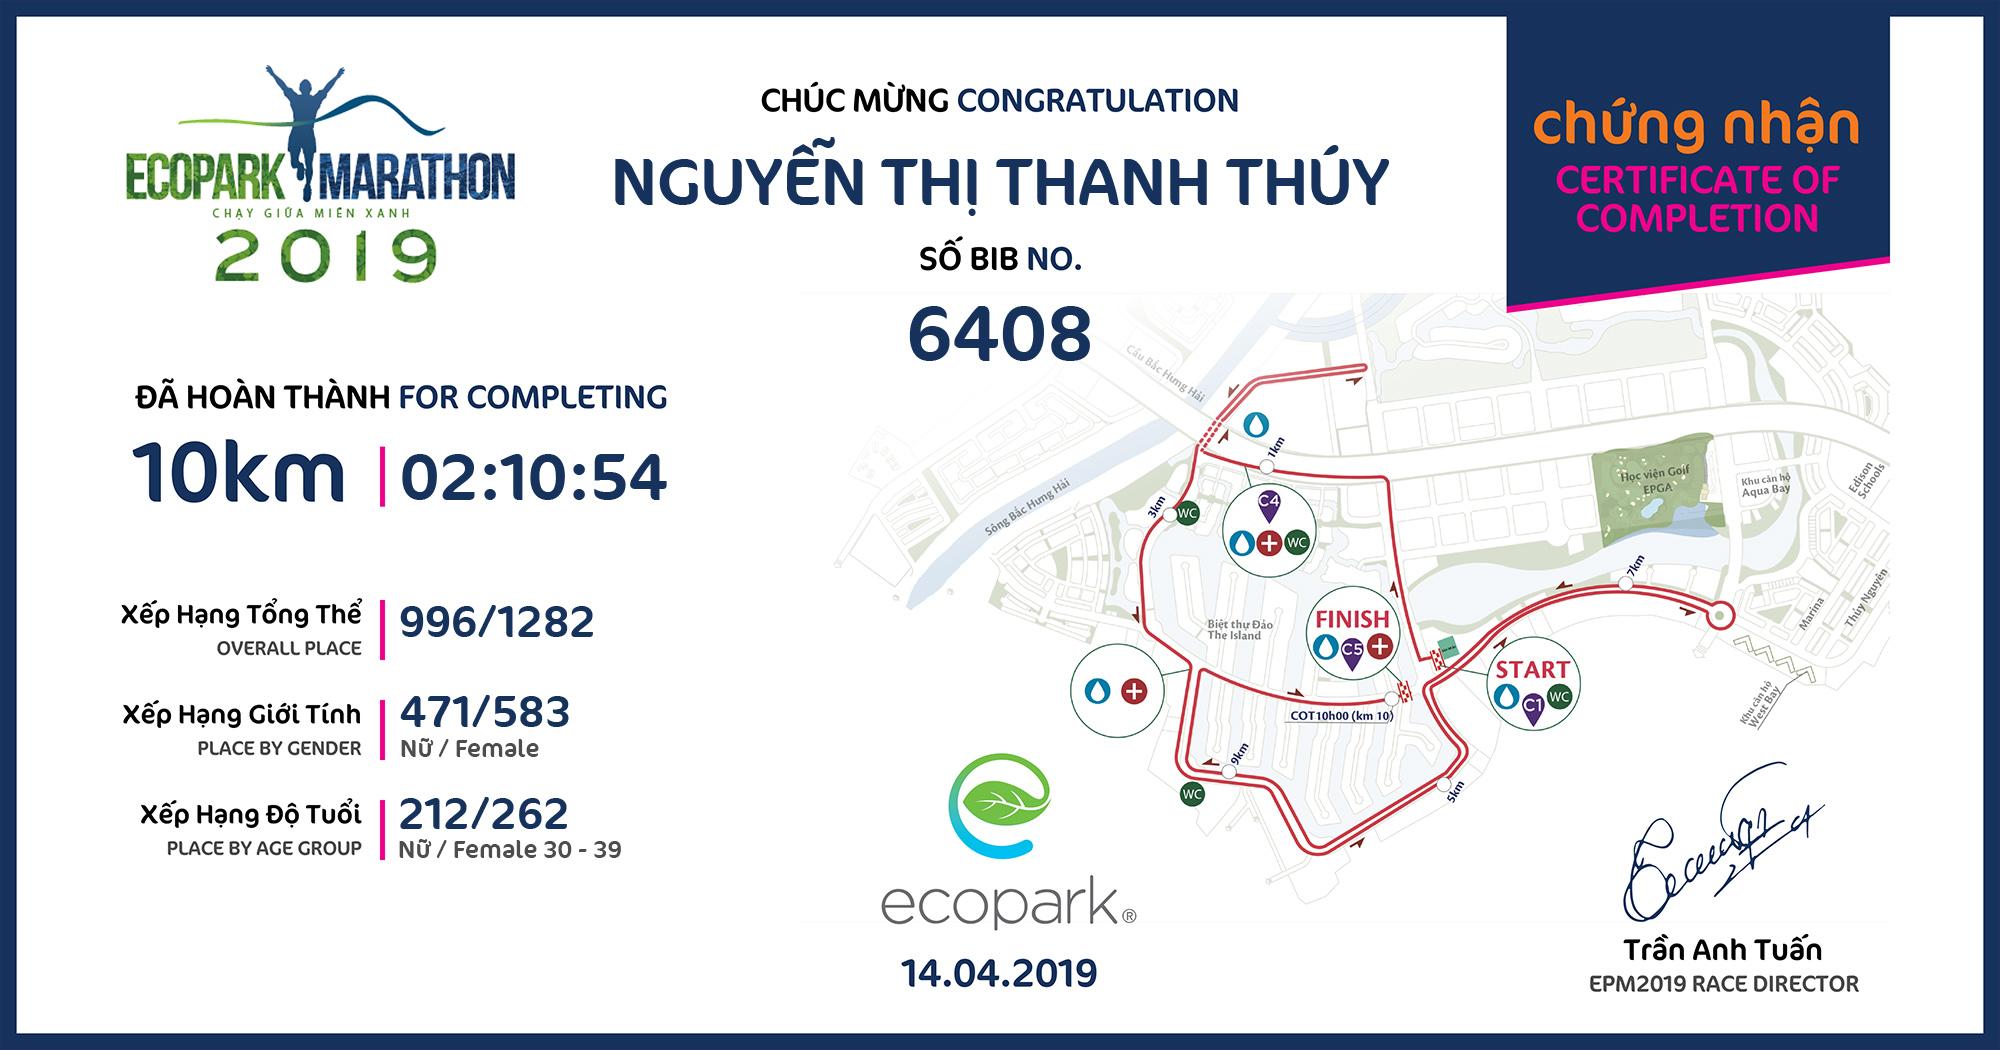 6408 - Nguyễn Thị Thanh Thúy